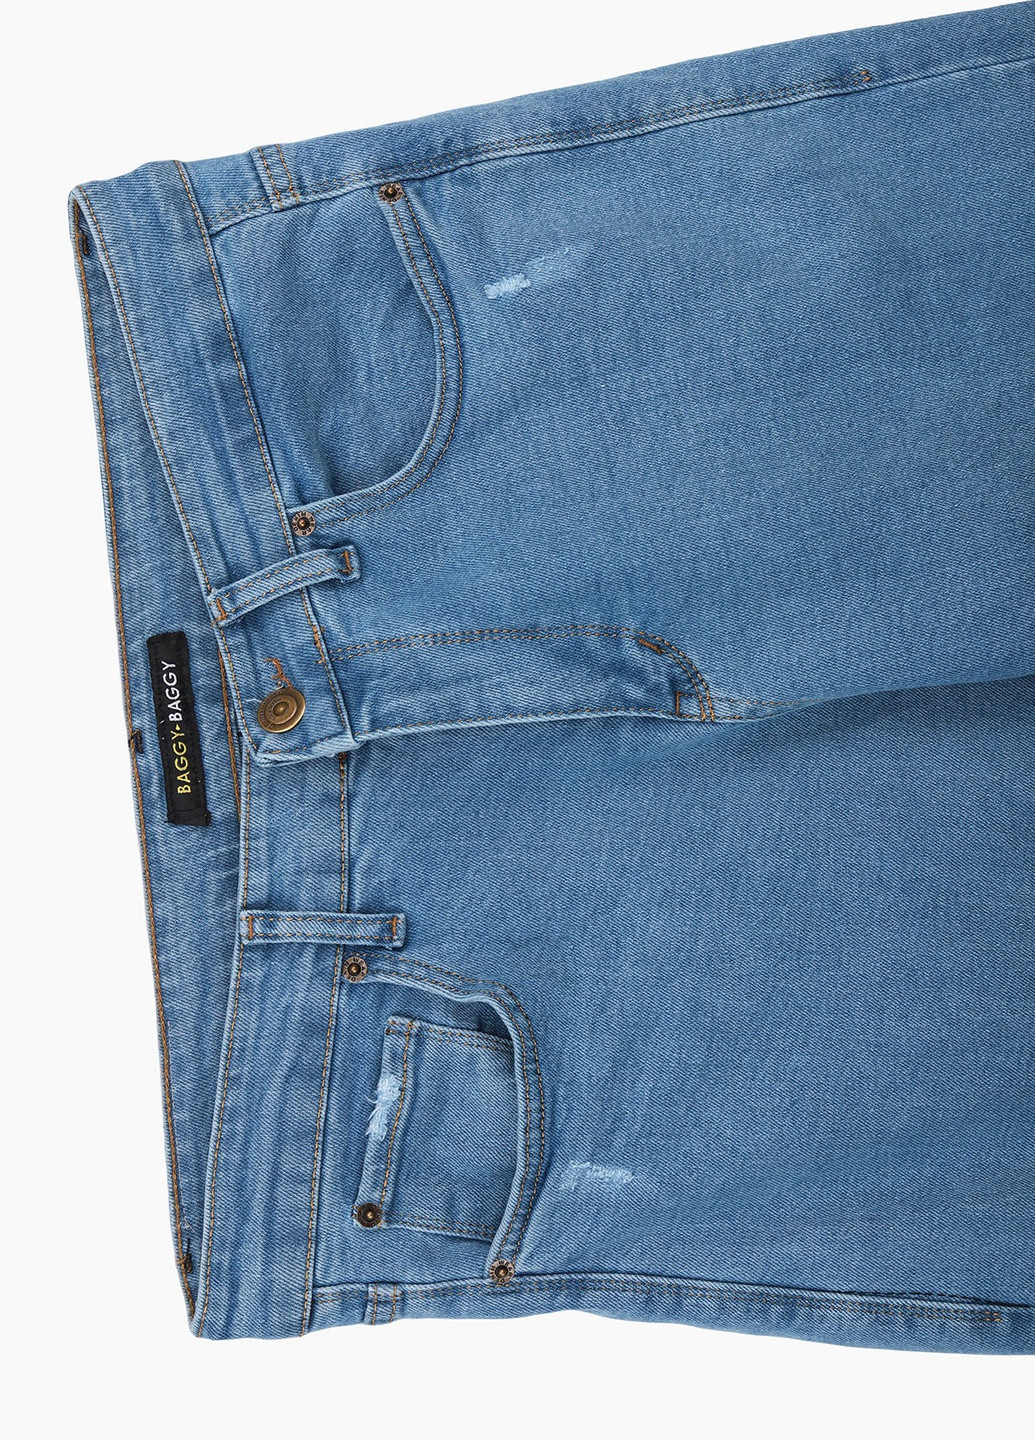 Голубые демисезонные джинсы baggy fit Mario Cavalli